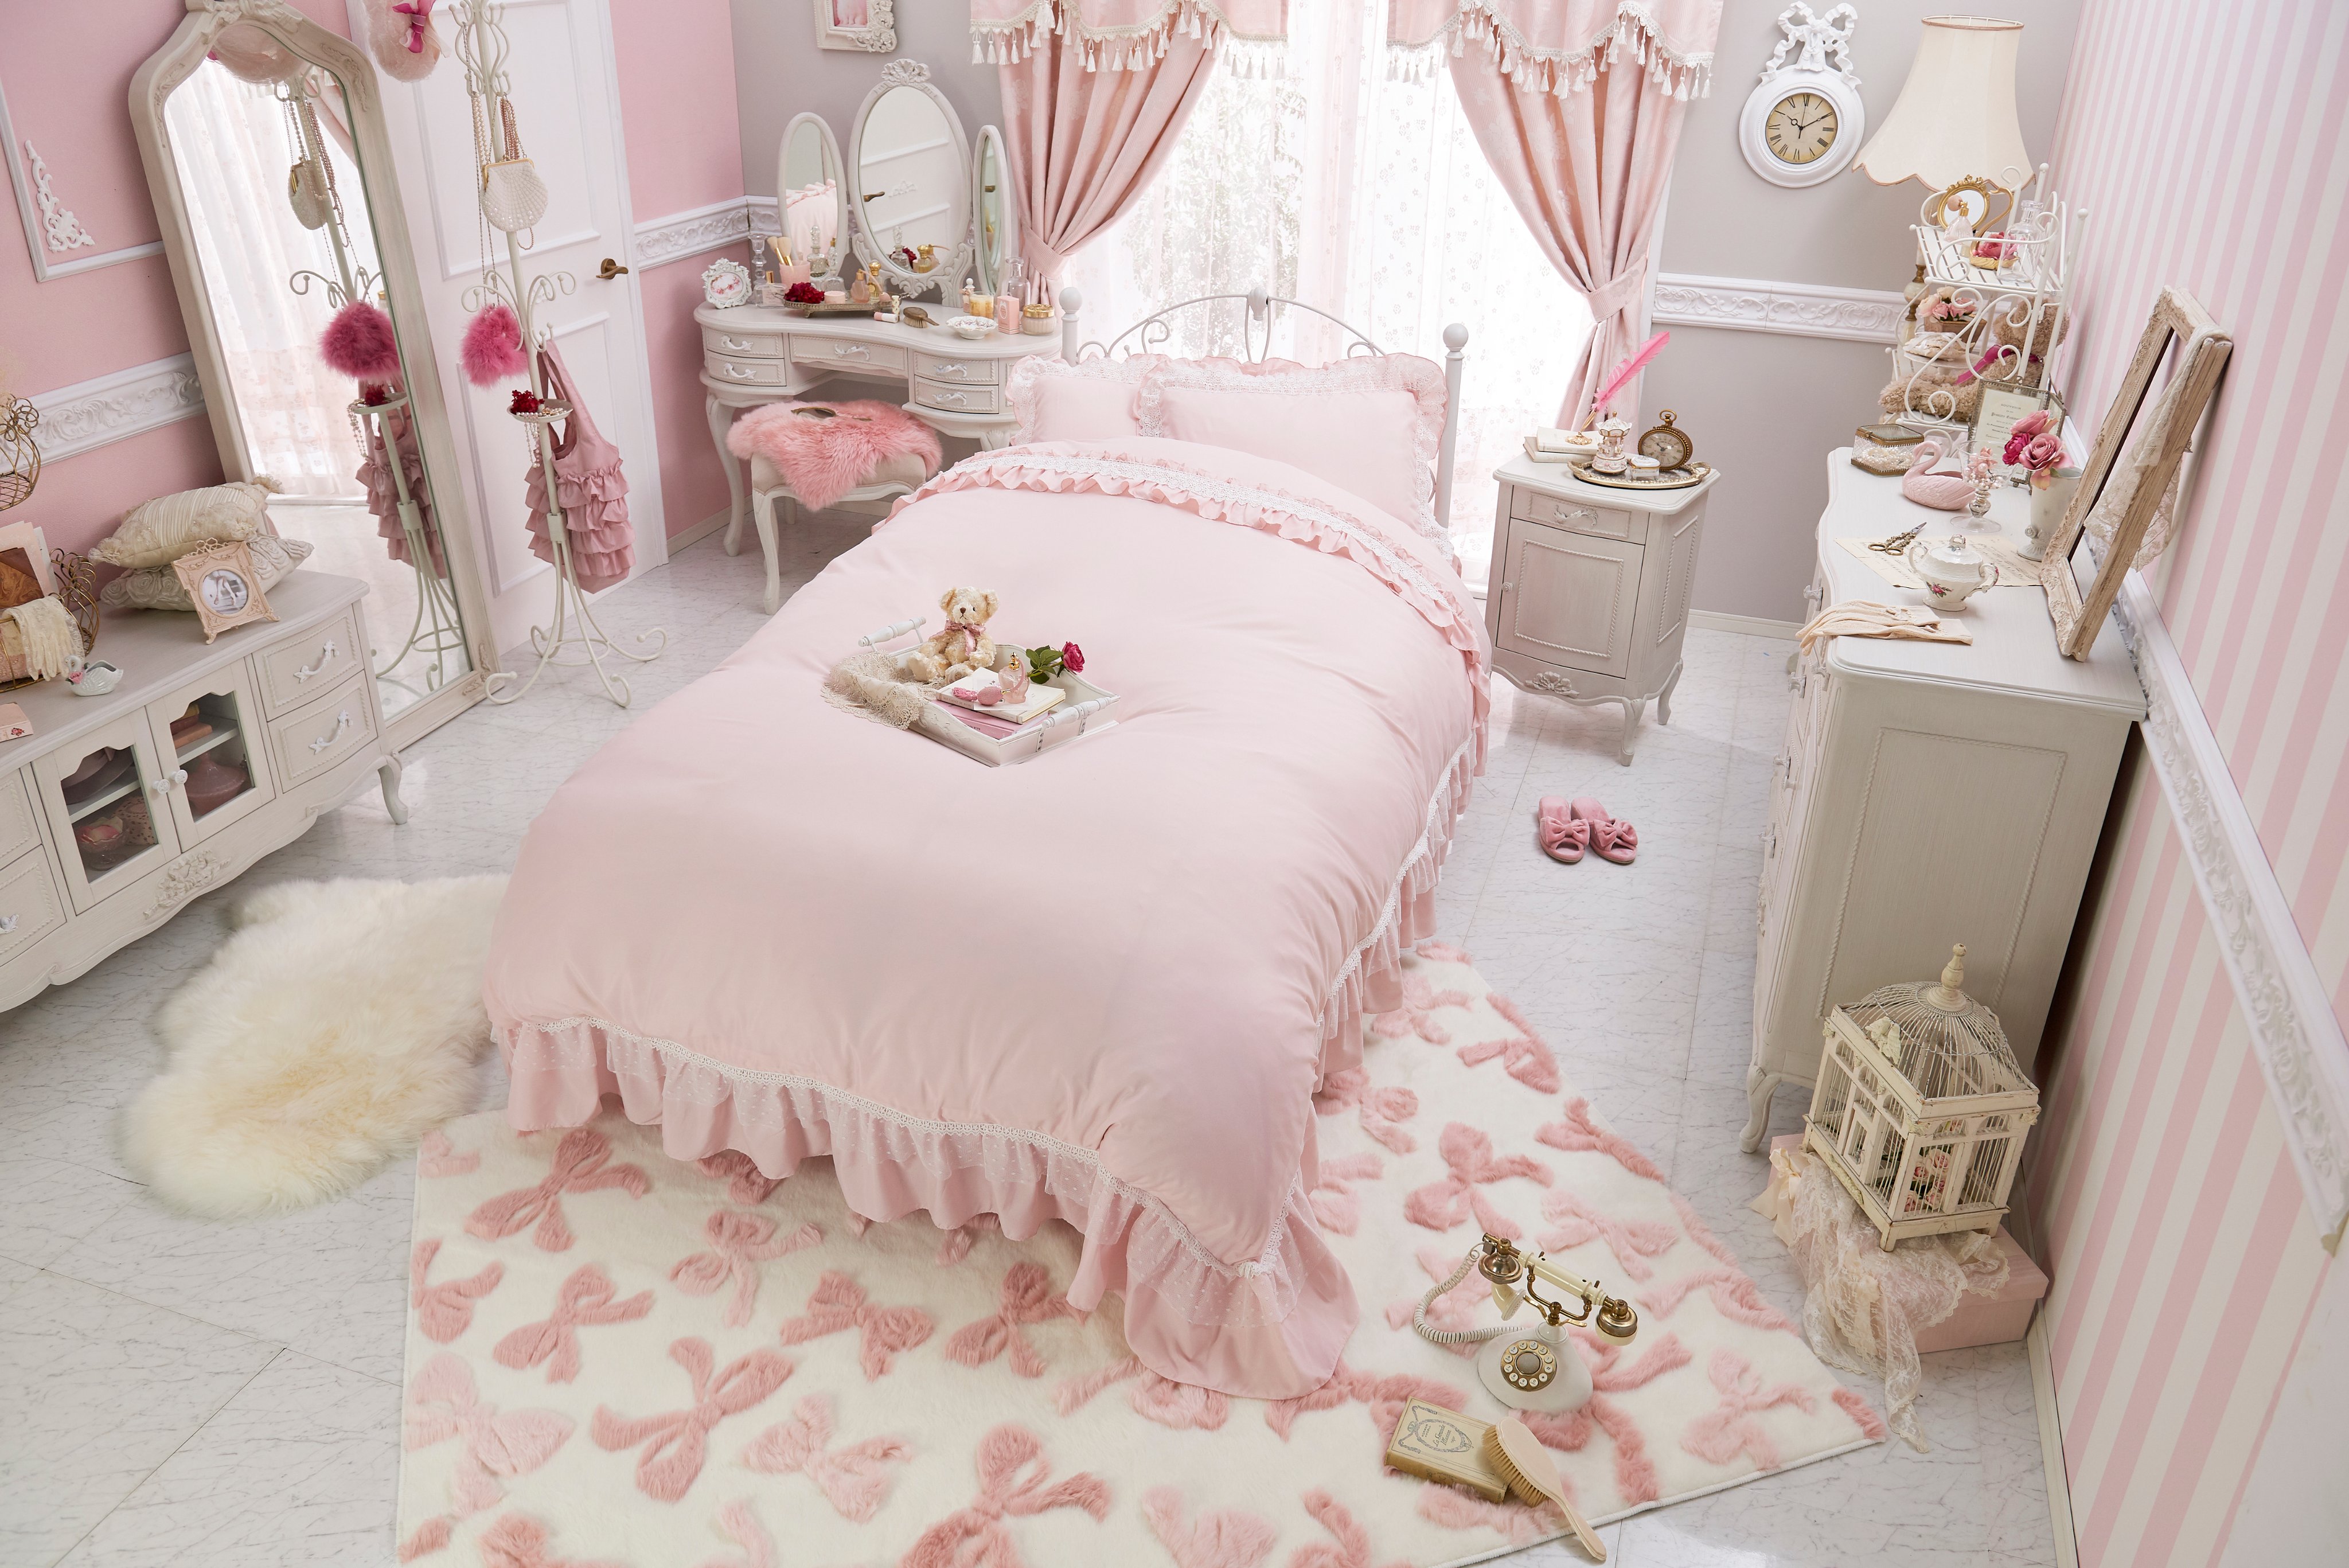 𝐑𝐨𝐦𝐚𝐧𝐭𝐢𝐜 𝐏𝐫𝐢𝐧𝐜𝐞𝐬𝐬 ロマプリ 公式 ピンクをたっぷり詰め込んで優雅にリッチな プリンセスルーム ピンクのベッドカバーがお部屋の印象を ピンクルーム に引き立たせてくれます T Co ufw9zebj お部屋紹介